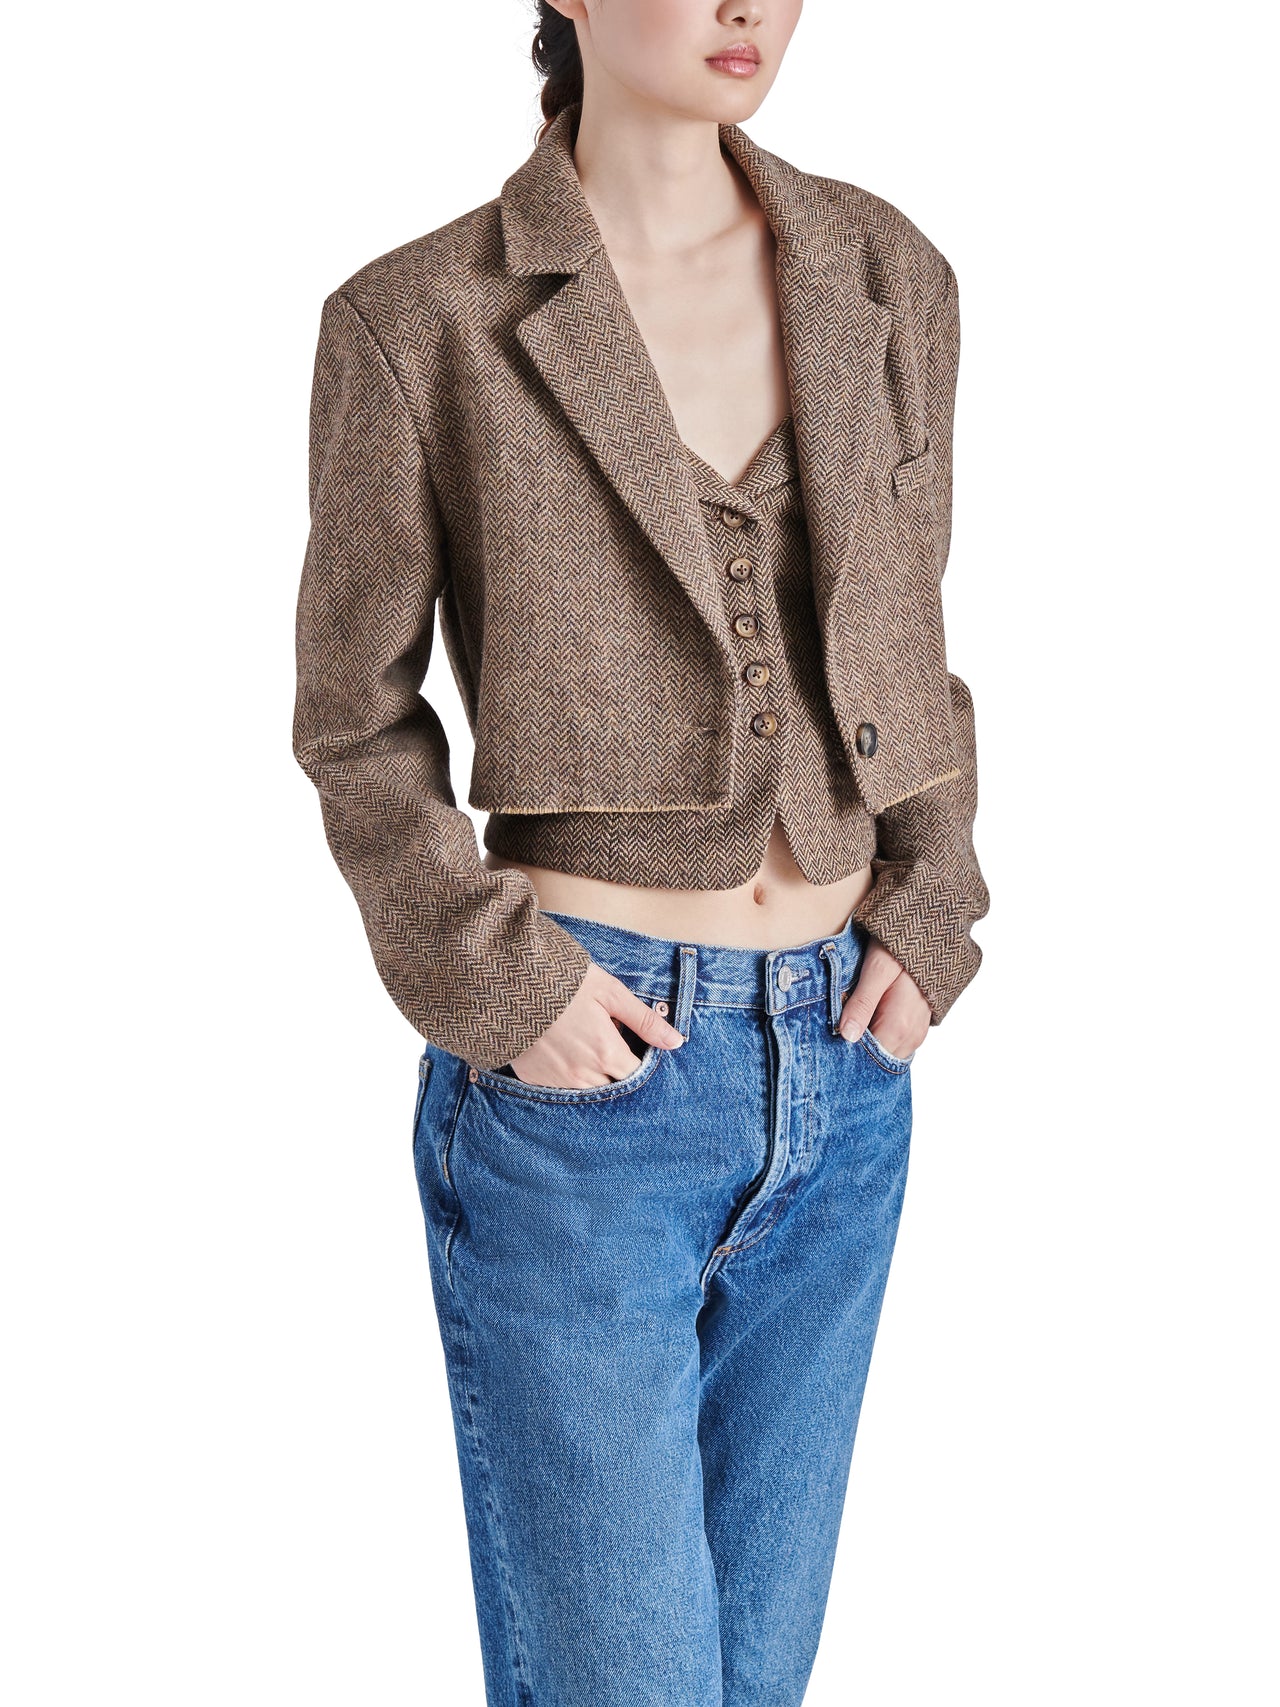 Rupi Cropped Blazer Brown, Jacket by Steve Madden | LIT Boutique